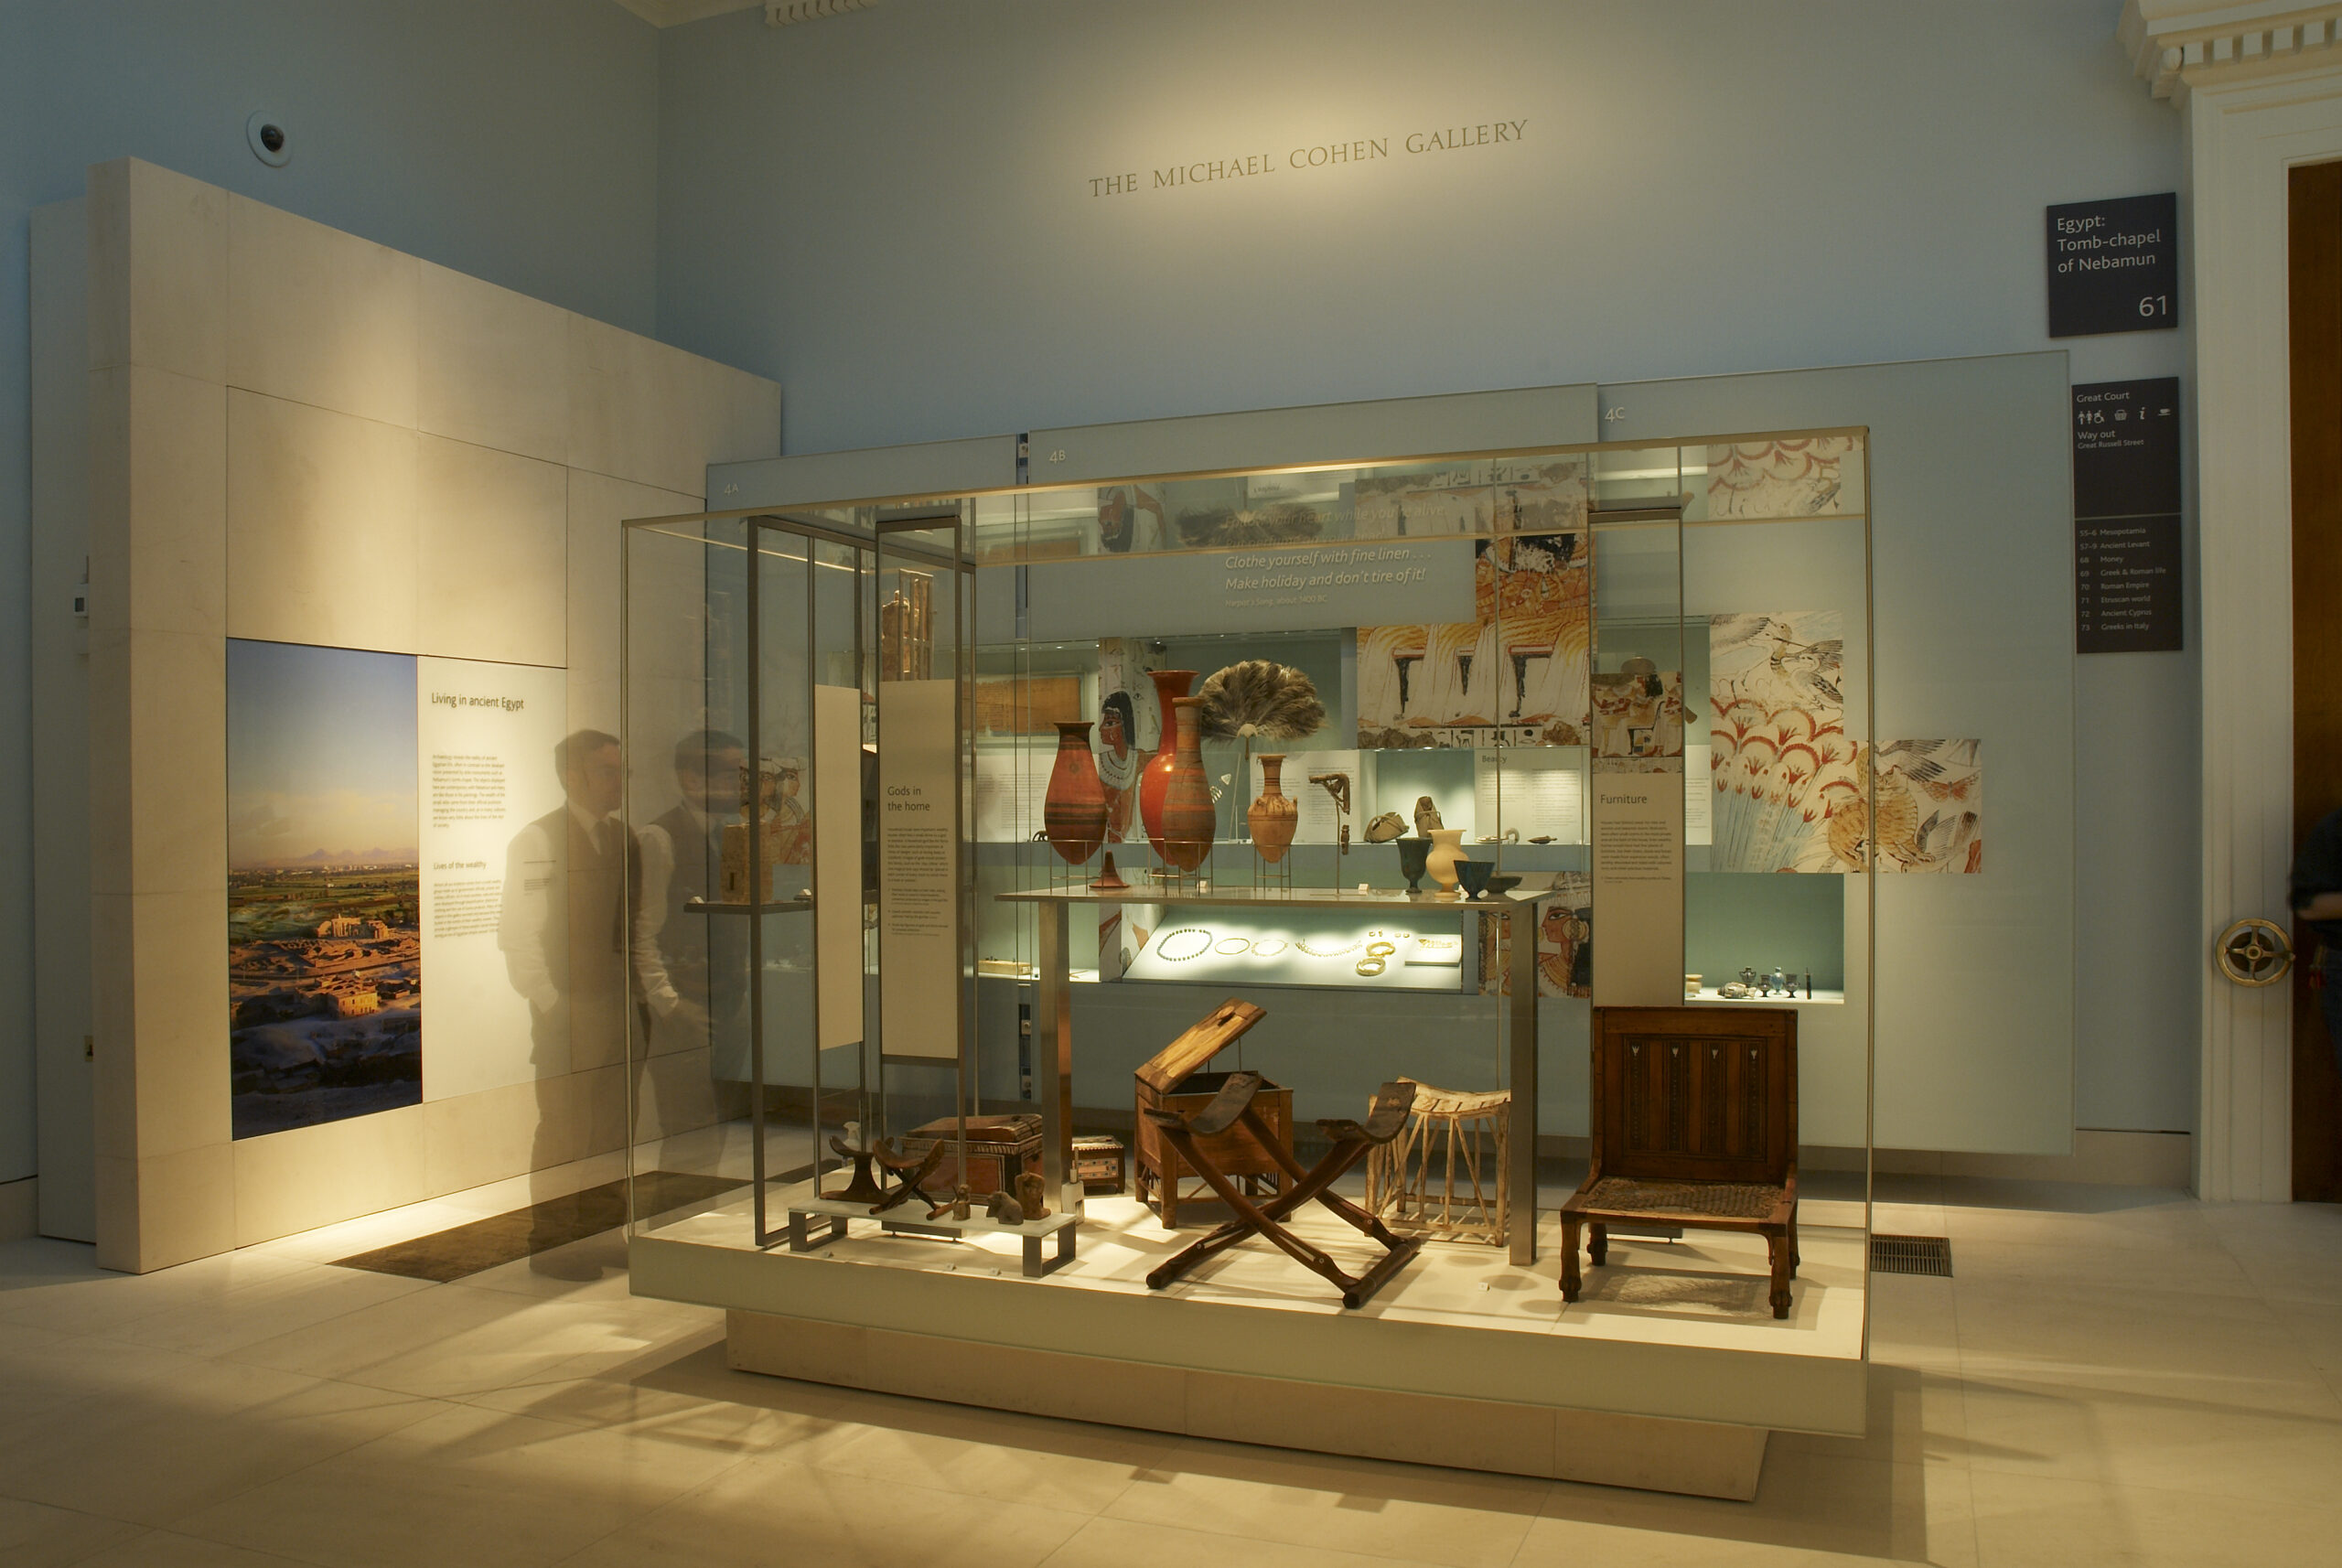 The British Museum – Nebamun Galleries portfolio